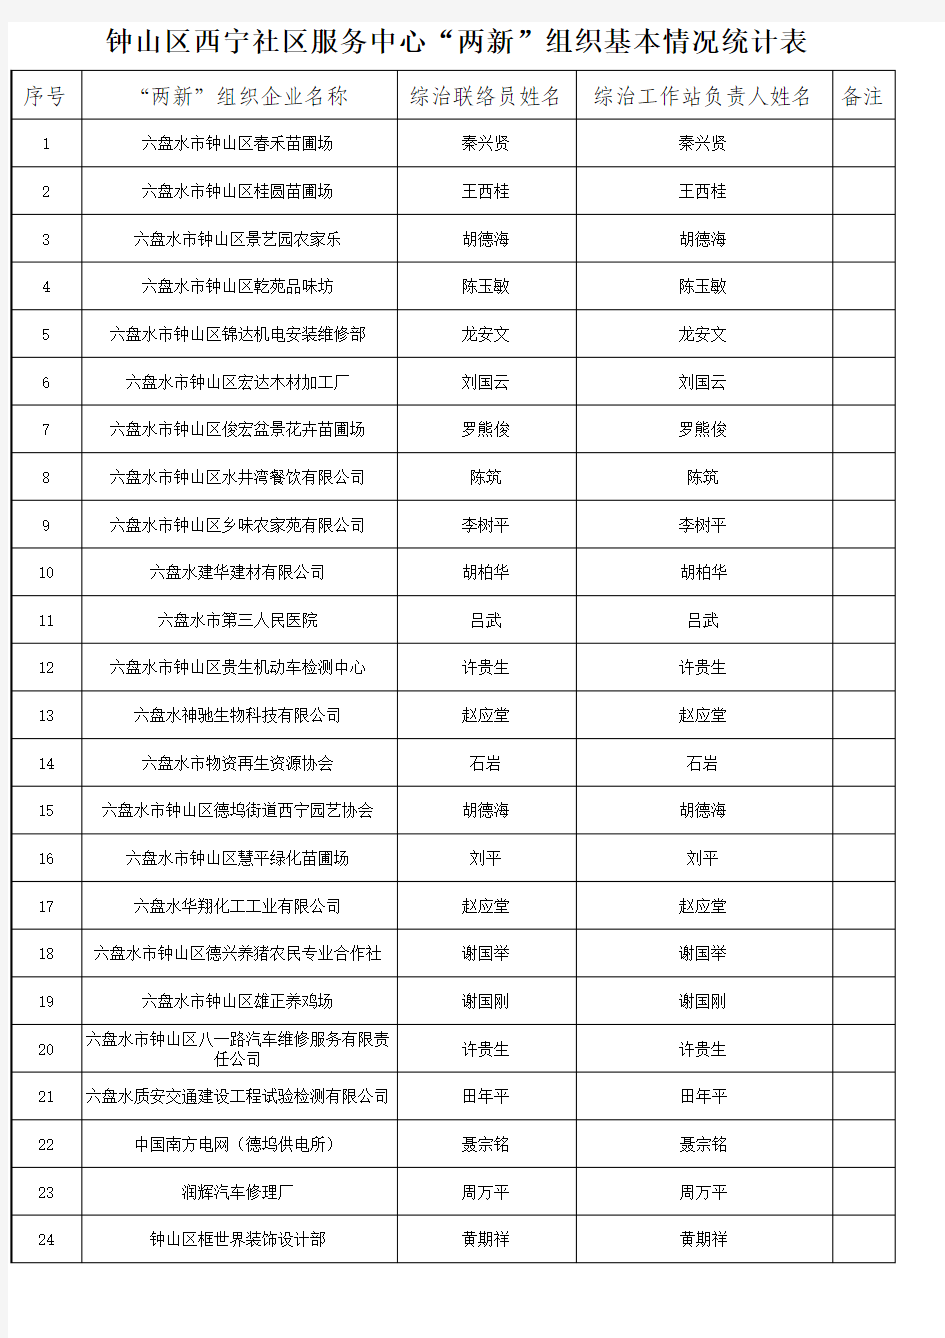 钟山区西宁社区服务中心“两新”组织基本情况统计表